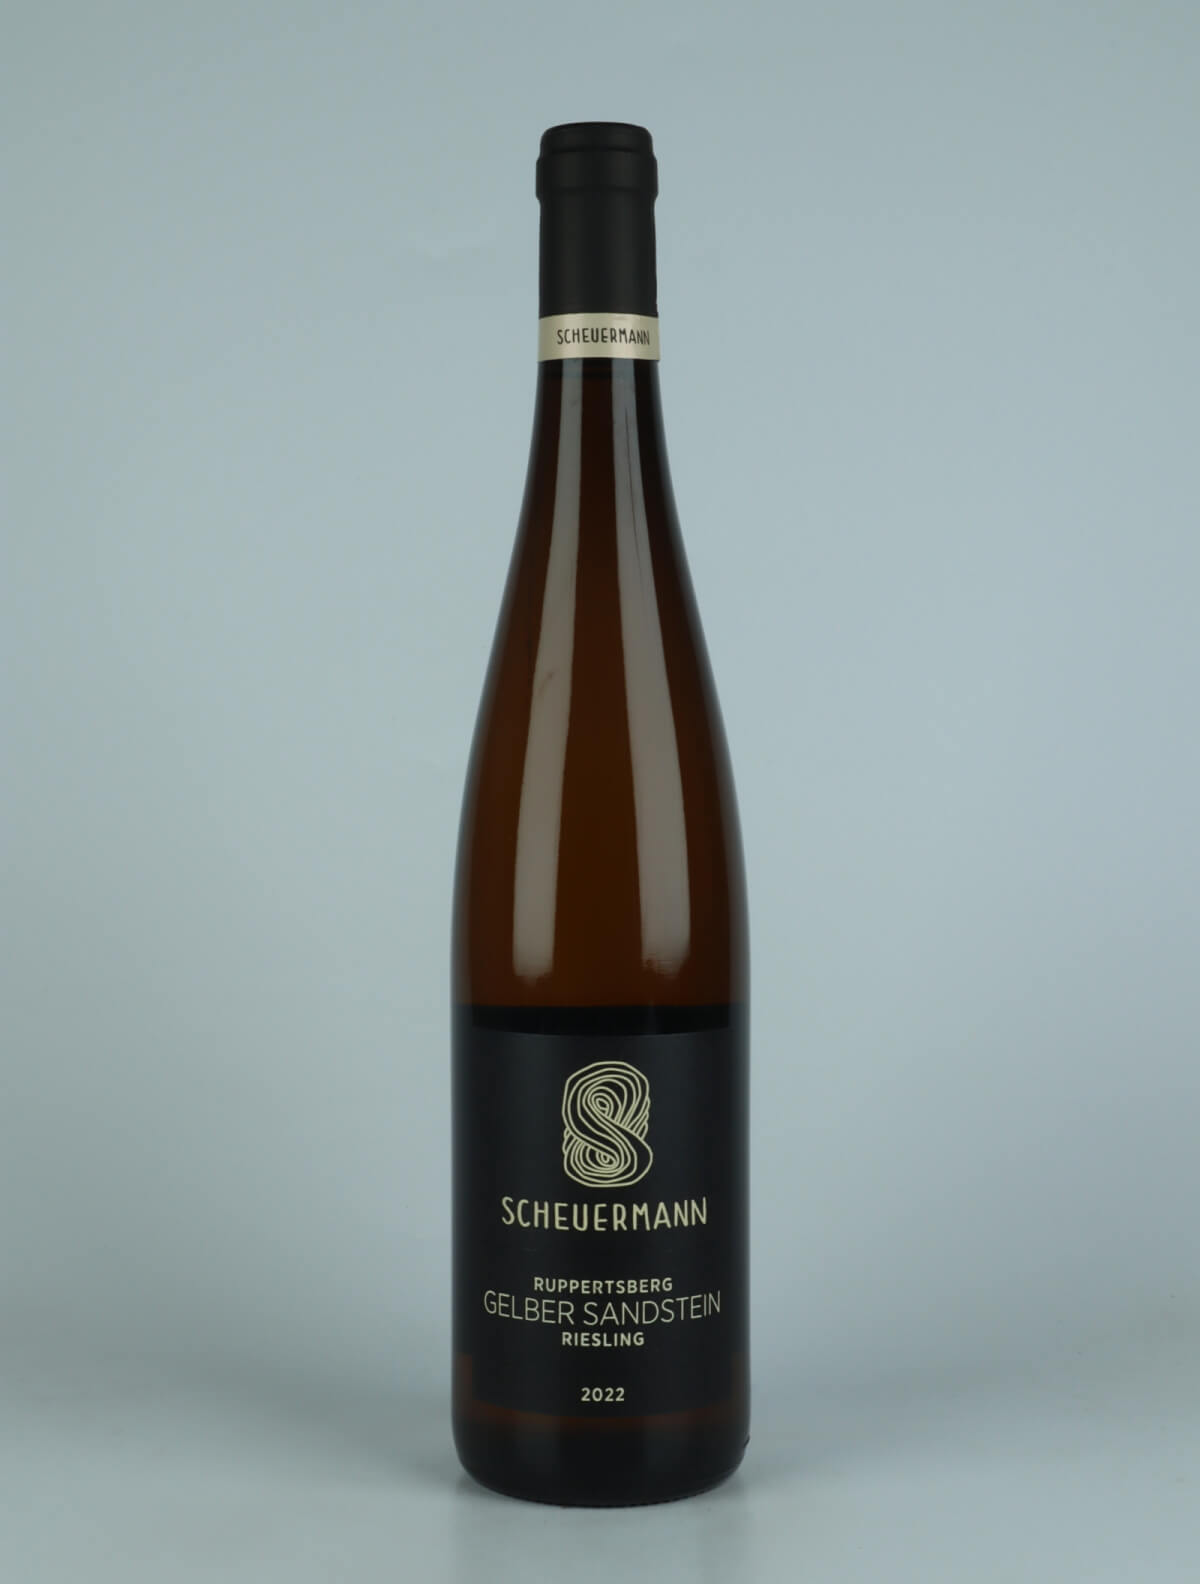 A bottle 2022 Riesling Gelber Sandstein White wine from Weingut Scheuermann, Pfalz in Germany